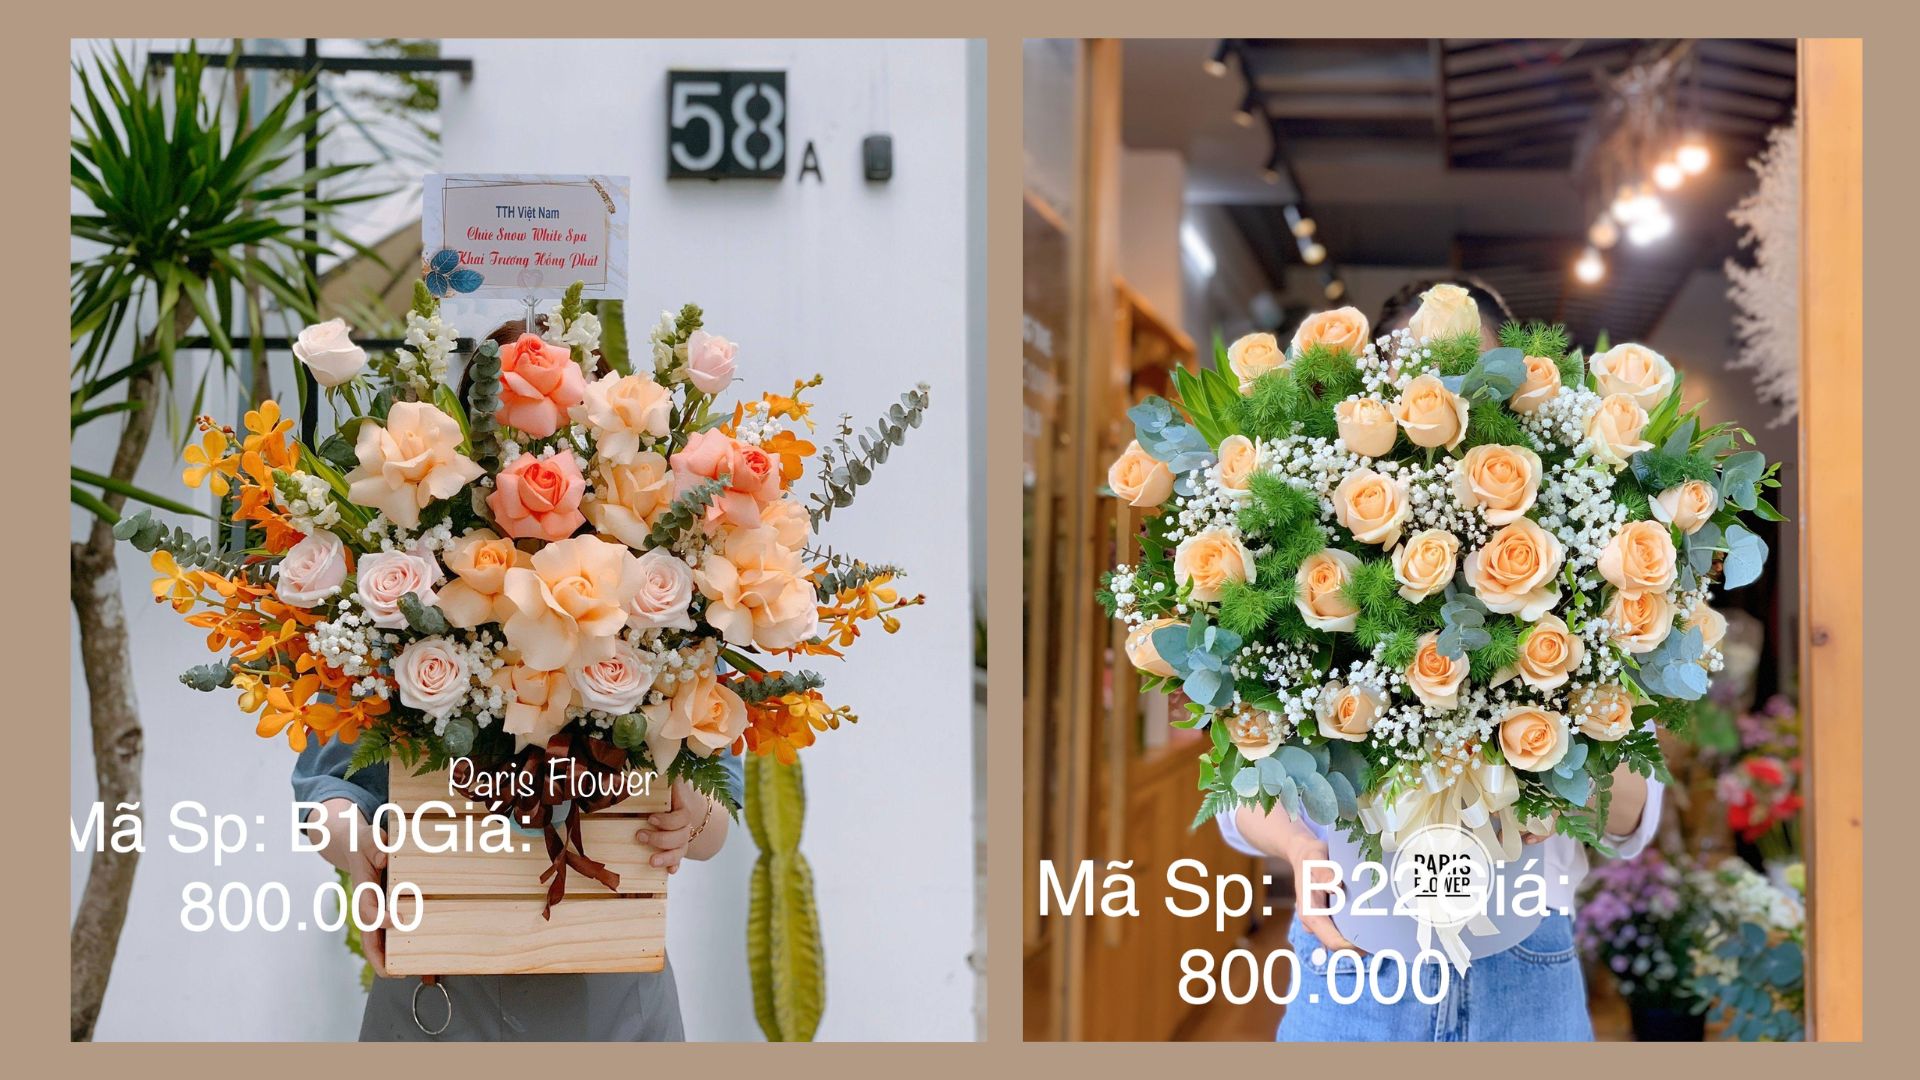 Paris Flower - Địa điểm bán hoa tươi đẹp tại Đà Nẵng